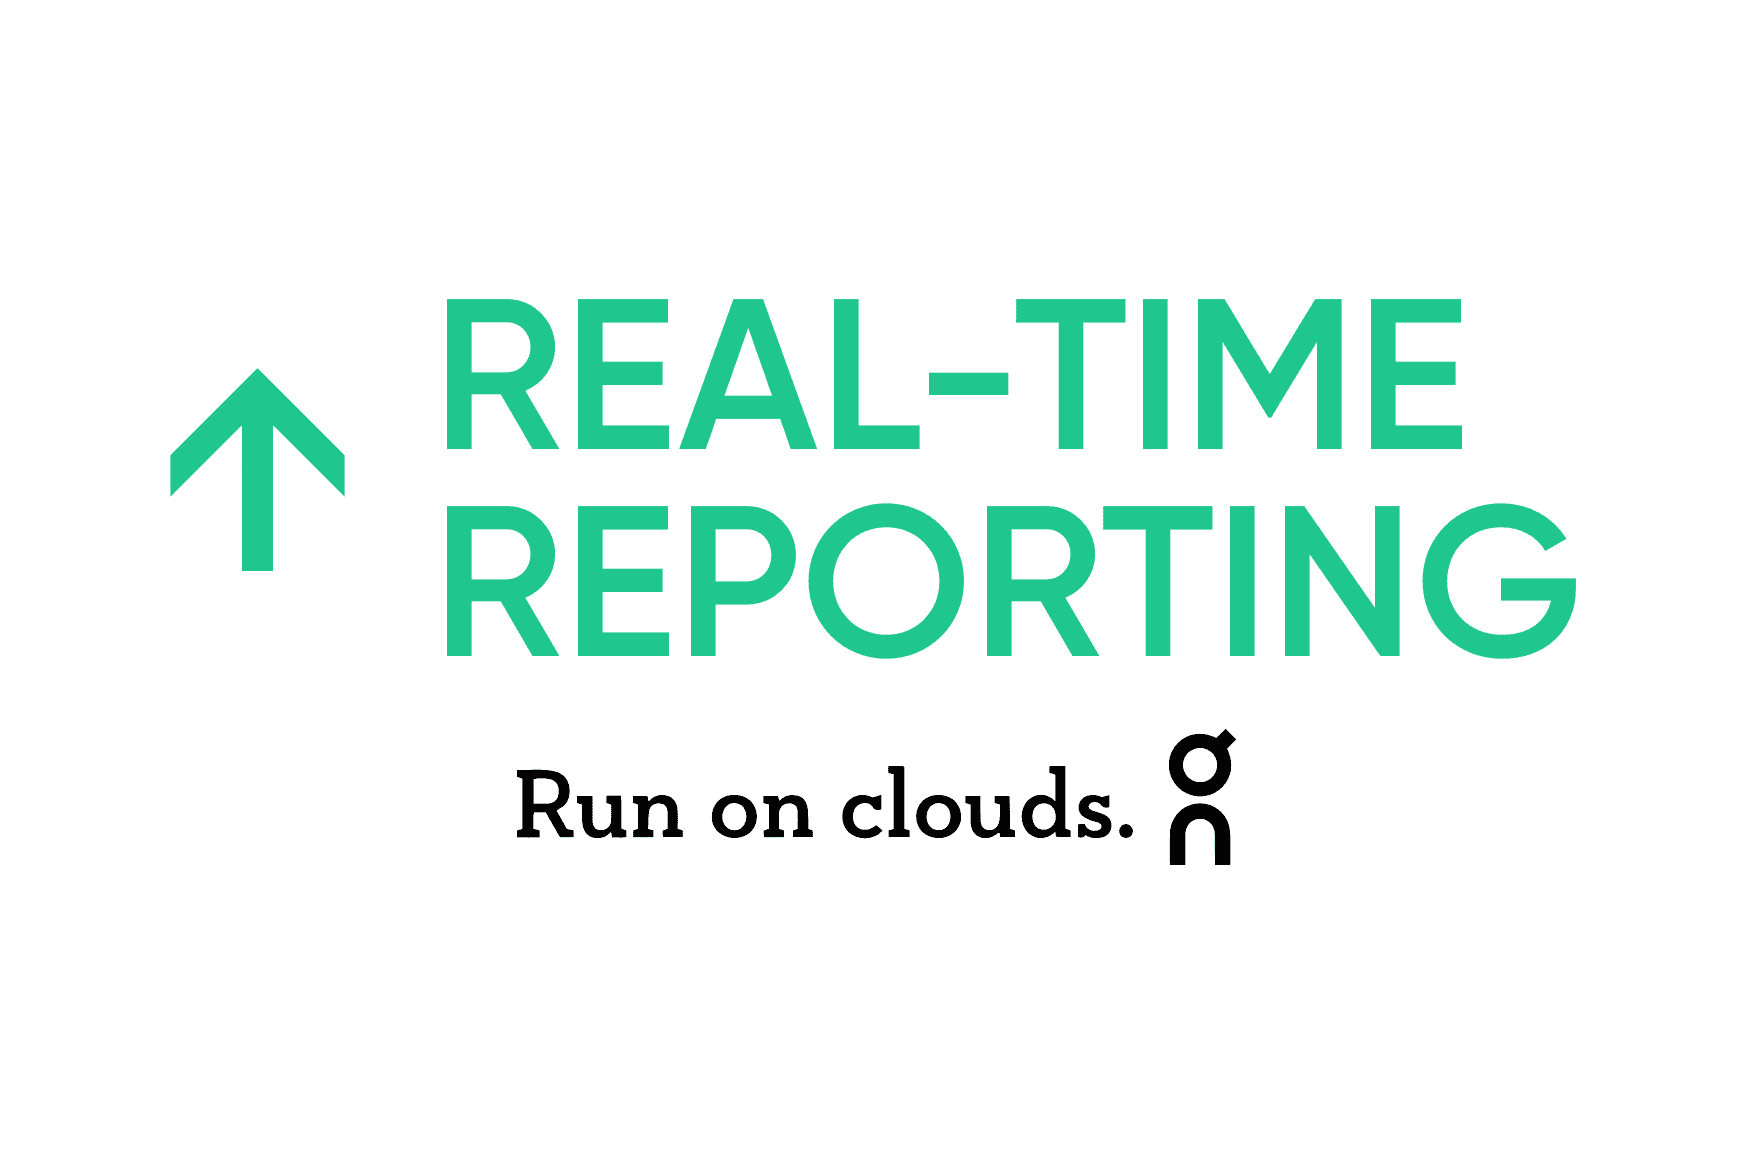 On: relatórios aprimorados em tempo real